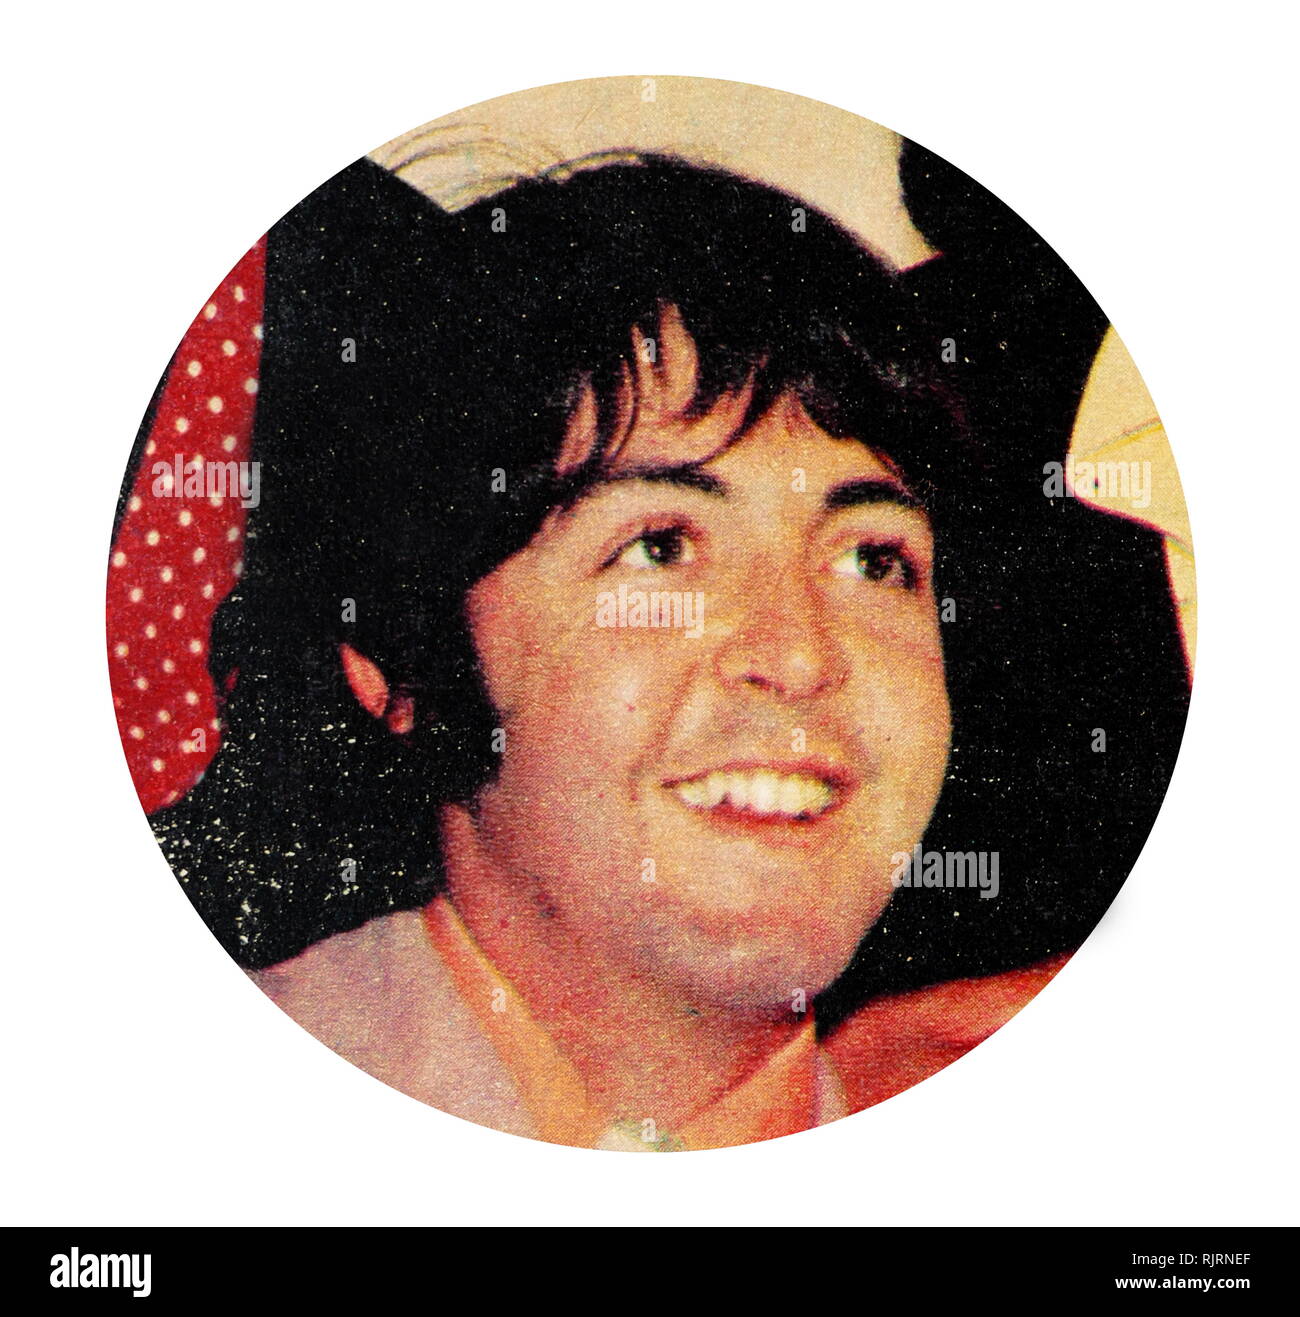 Paul McCartney (nato nel 1942), cantautore, multi-strumentista e compositore. Ha guadagnato fama in tutto il mondo come il bassista chitarrista e cantante per la rock band The Beatles, ampiamente considerata la più popolare e influente gruppo nella storia della musica pop. Foto Stock